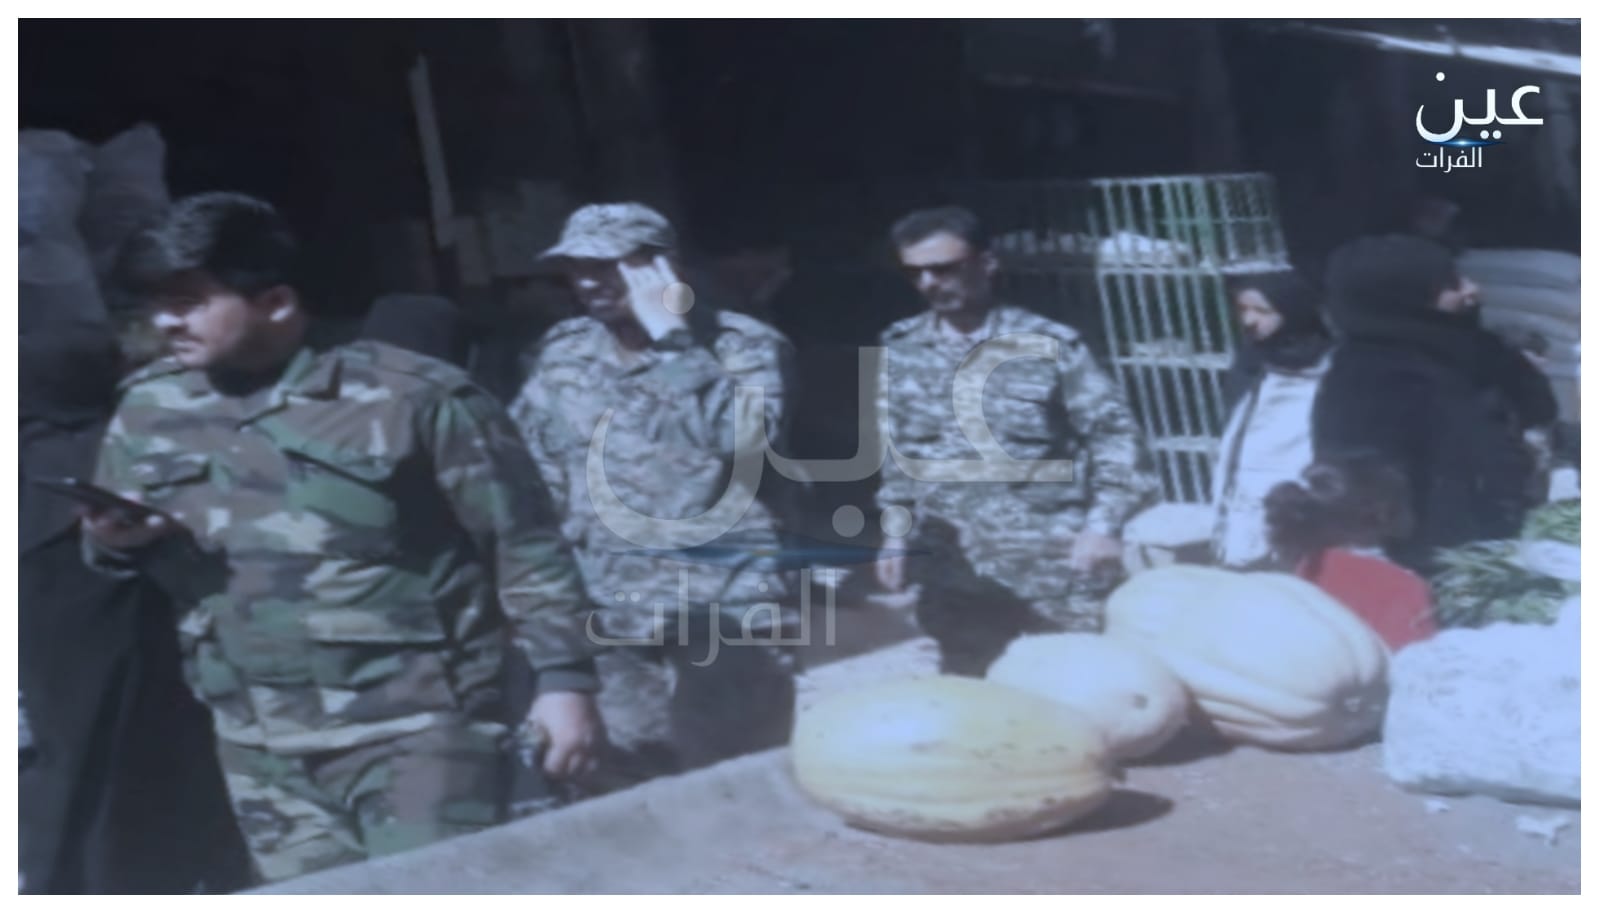 עין אל-פורת עוקב אחר מפקד המיליציה של חטיבת פתמיון וחושף את פרטי סיורו בעיר אל-בוקמאל (וידאו)